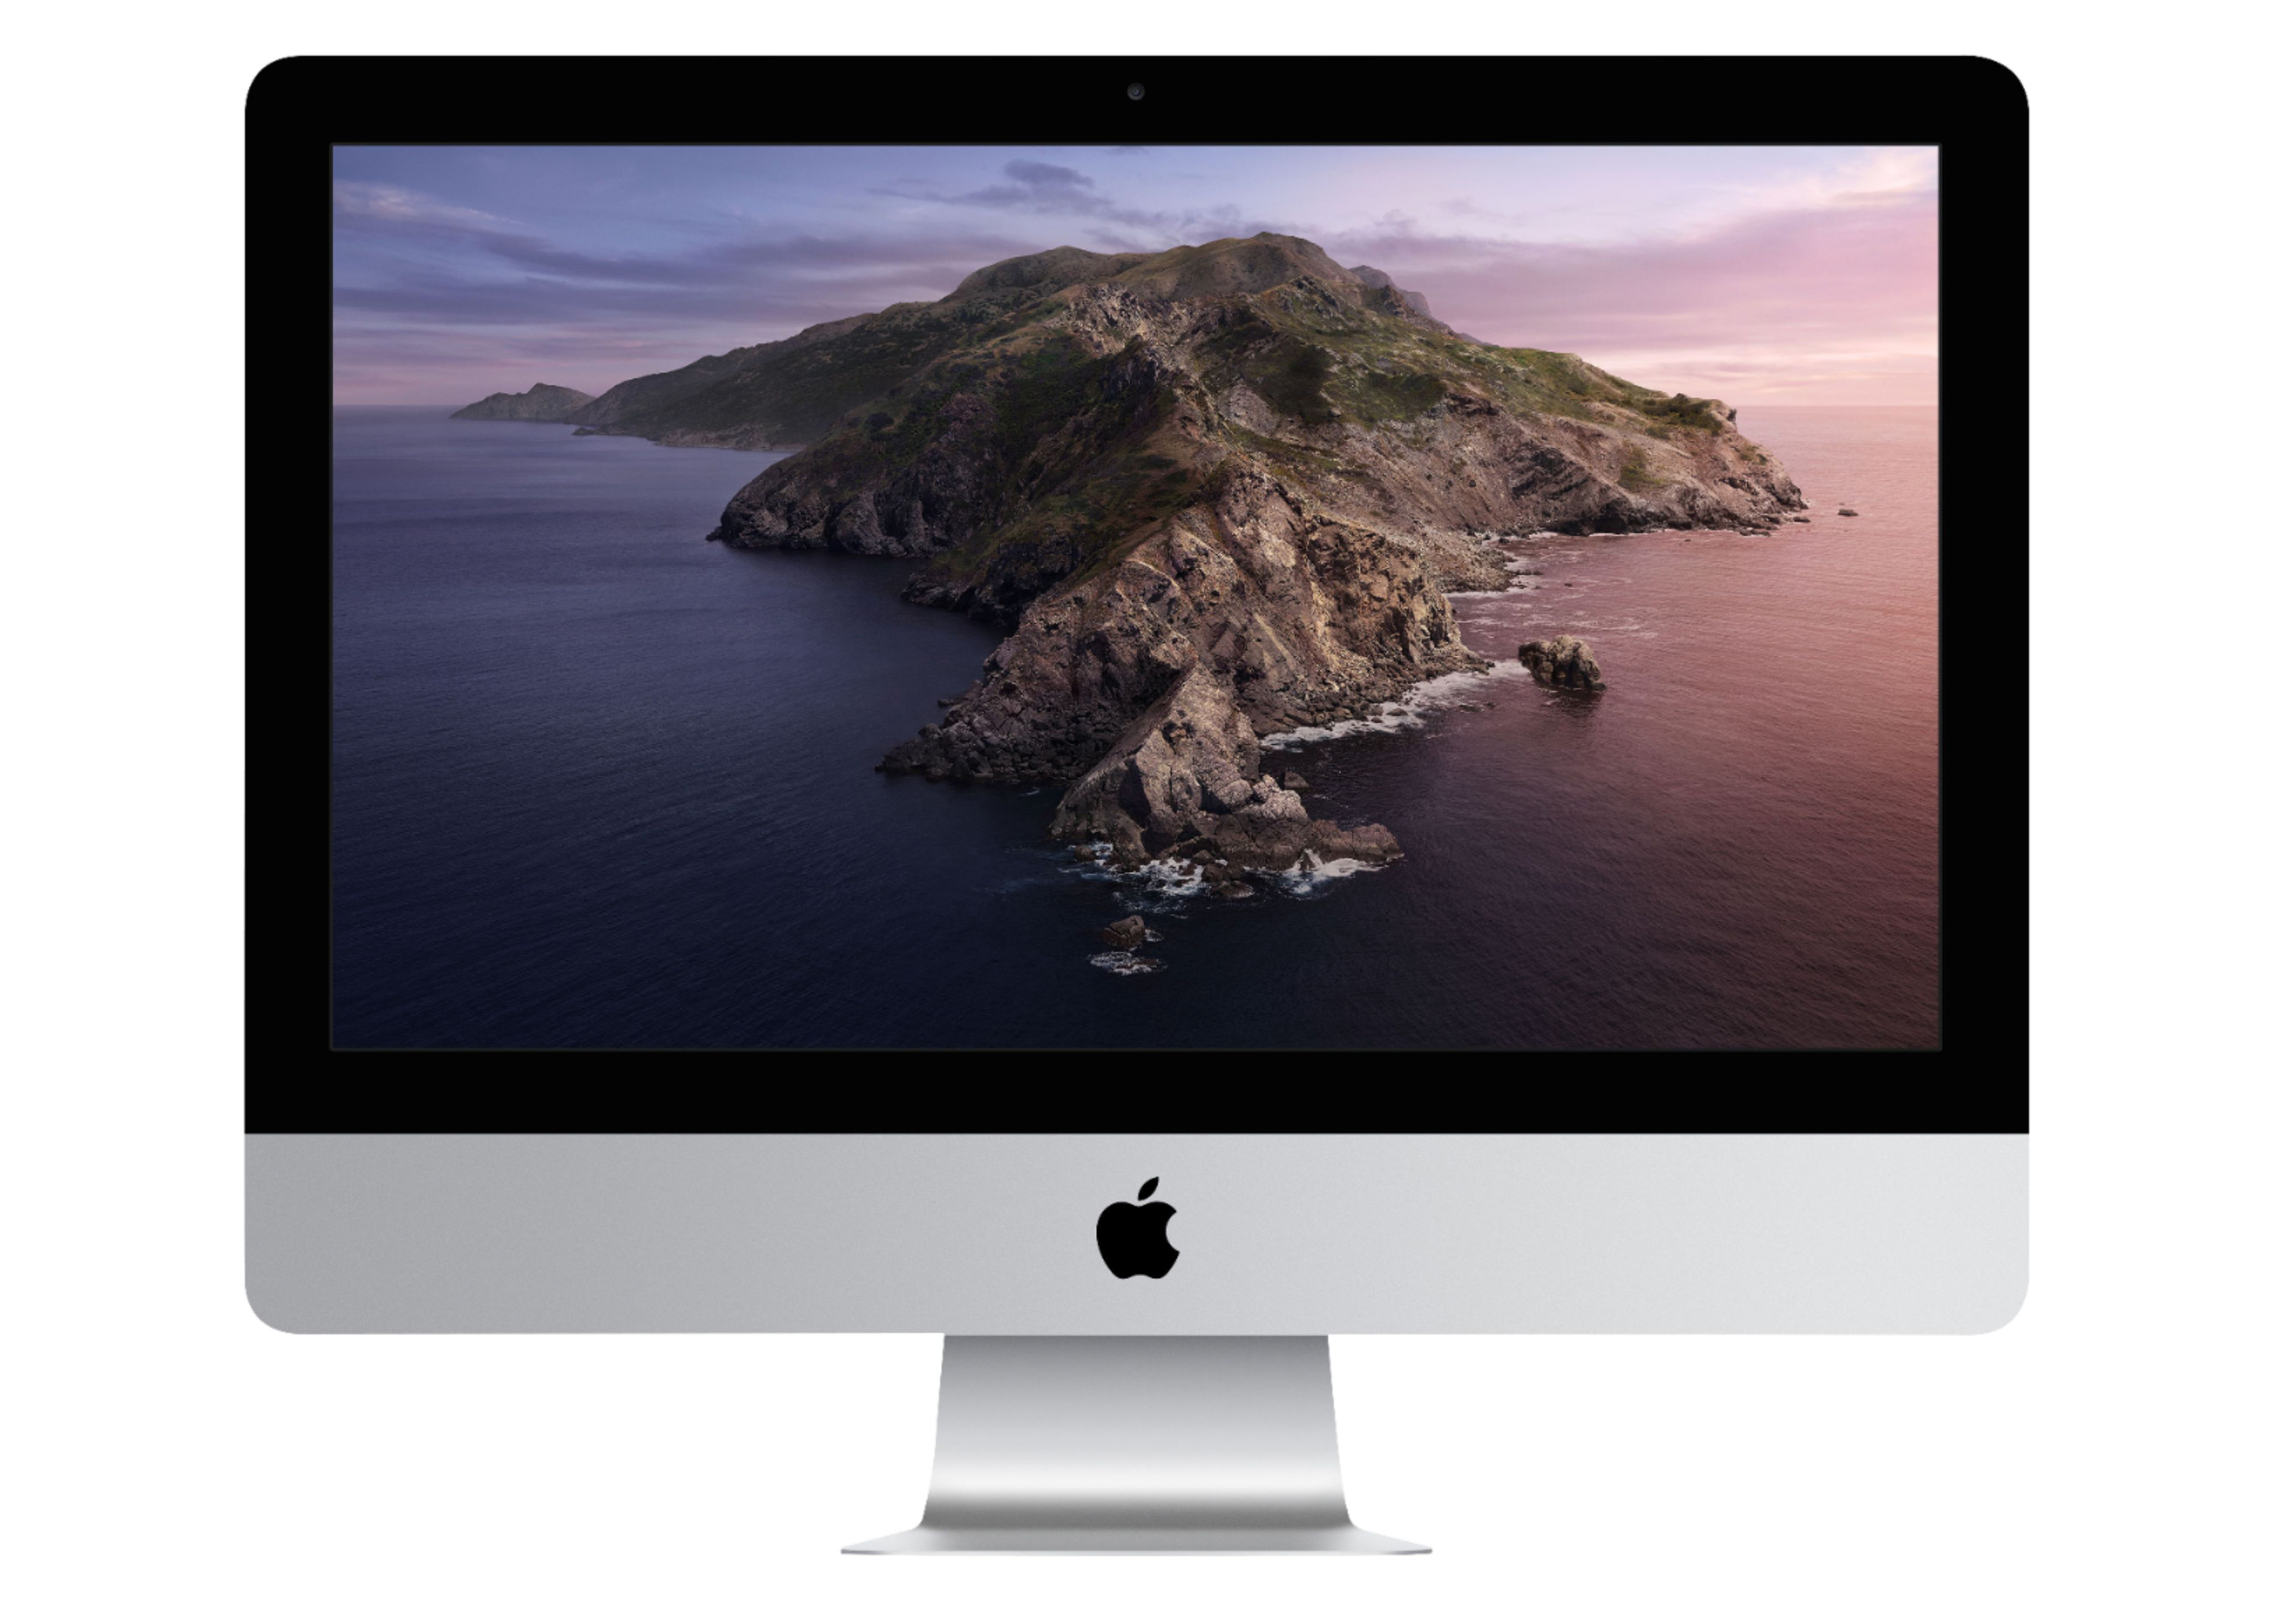 iMac (21.5-inch, 2017) メモリ16GB ストレージ1TBコメントありがとうございます